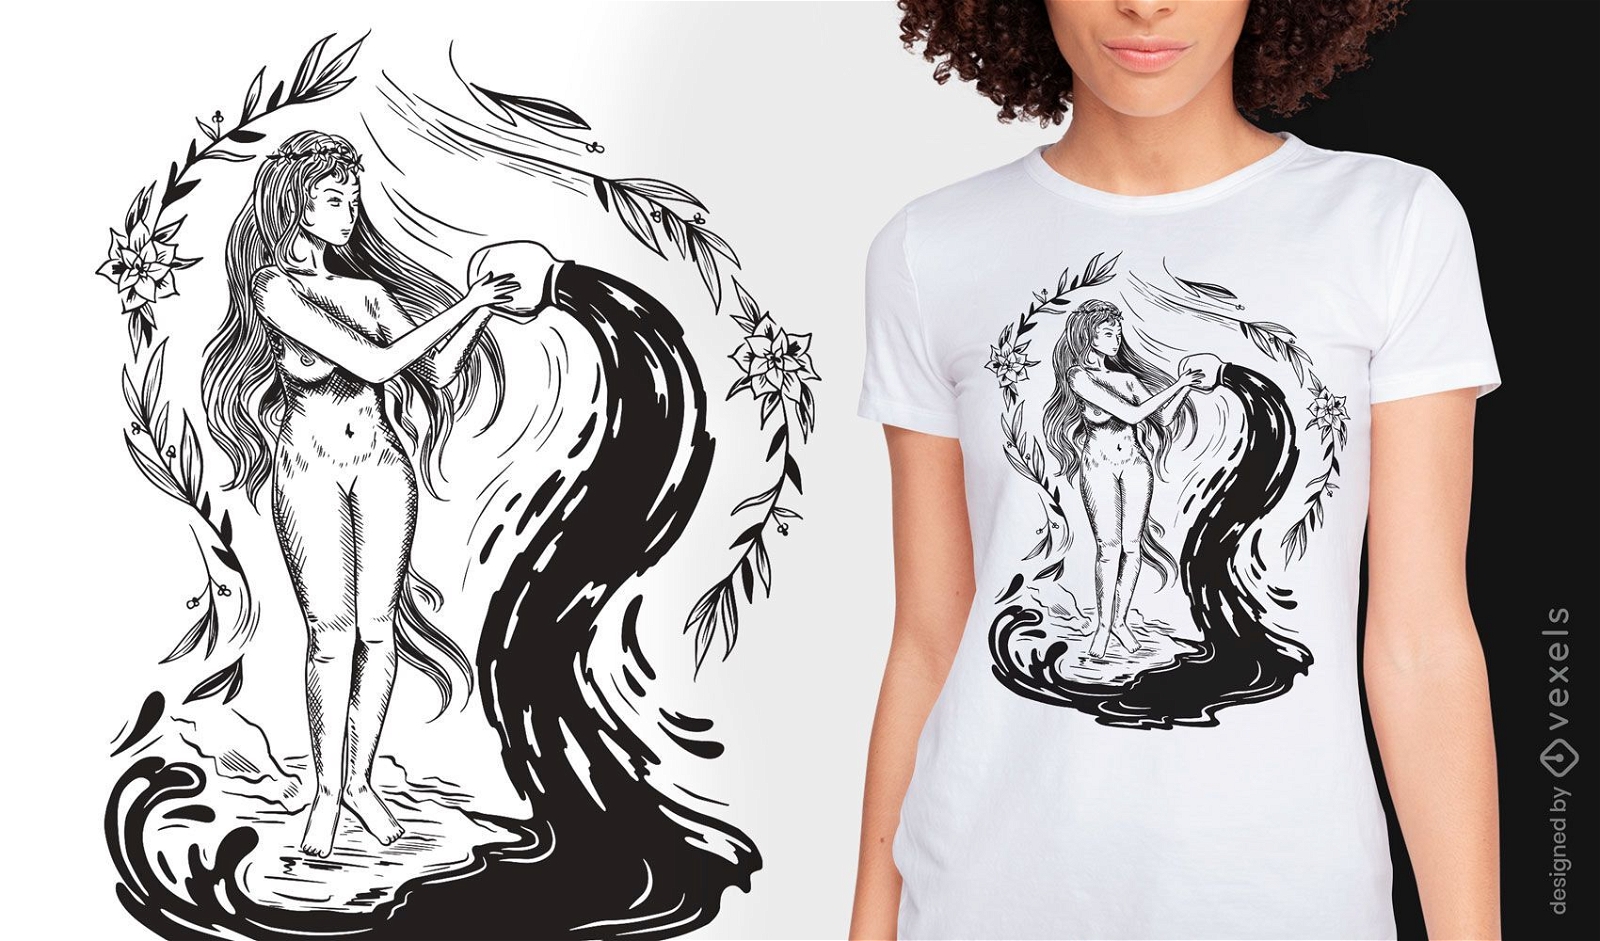 Design de t-shirt art nouveau de mulher escura